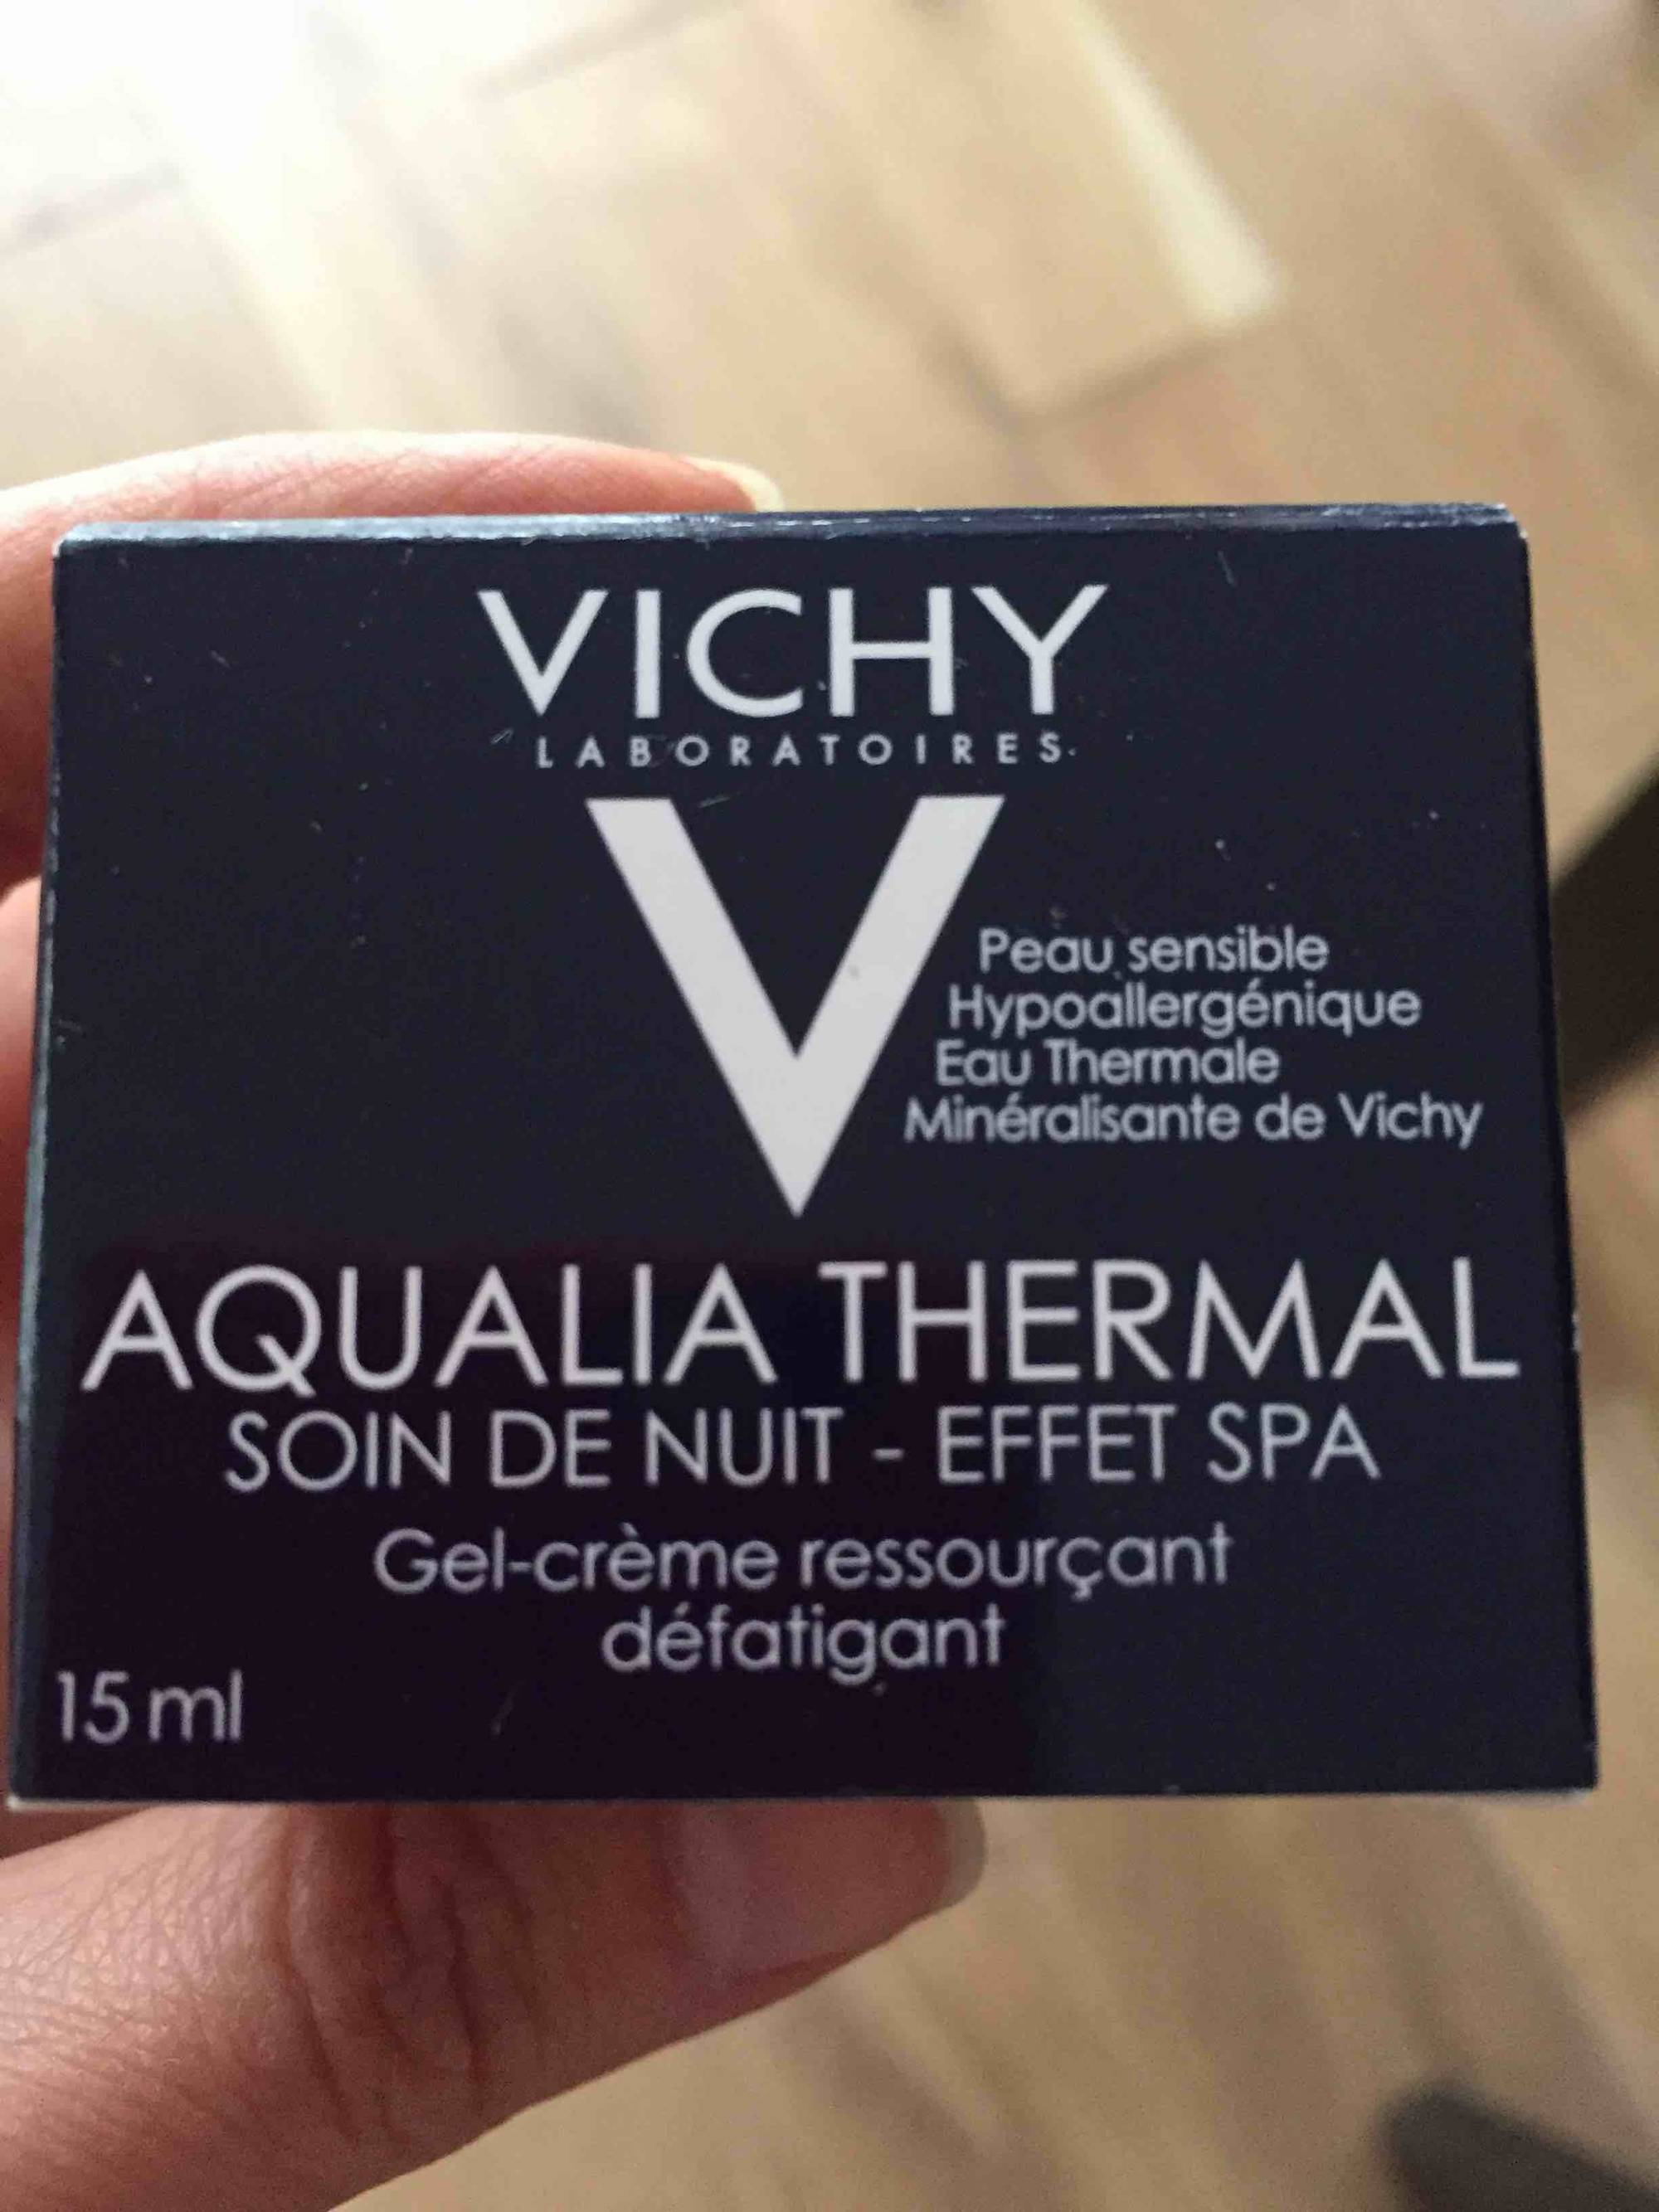 VICHY - Aqualia thermal - Soin de nuit - Effet SPA - Gel-crème ressourçant défatigant